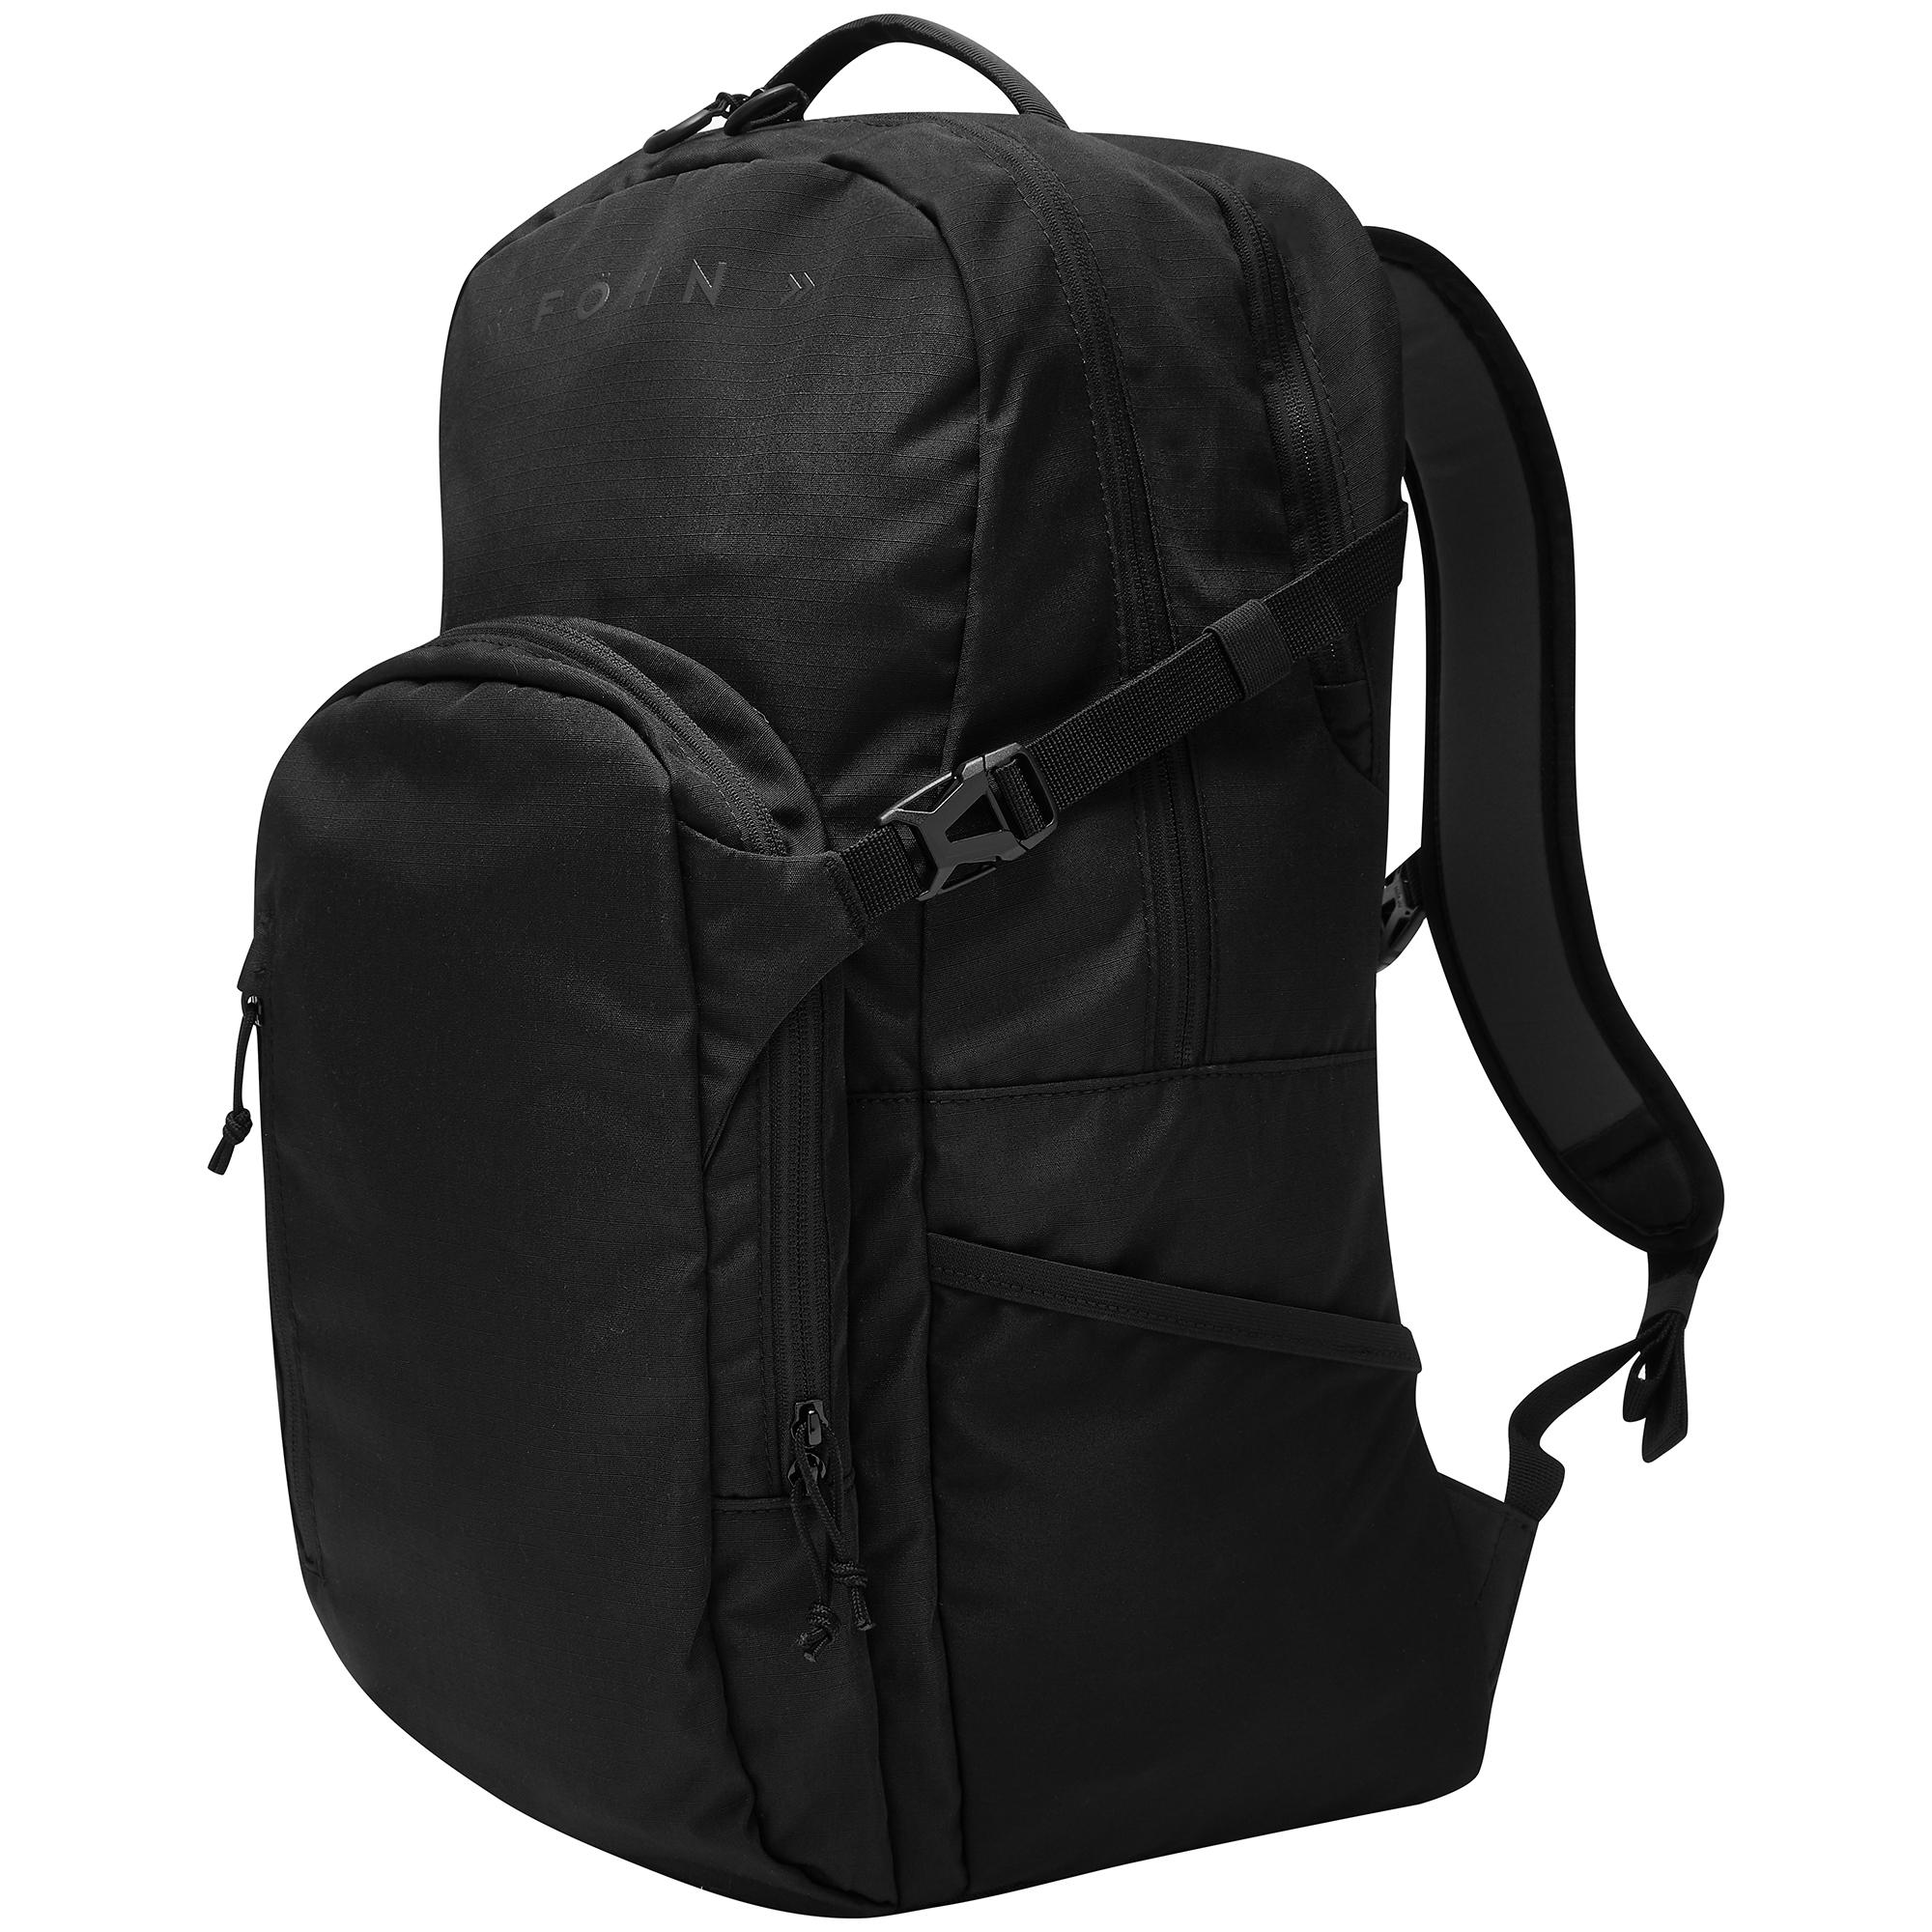 Fhn Commuter Backpack - Black